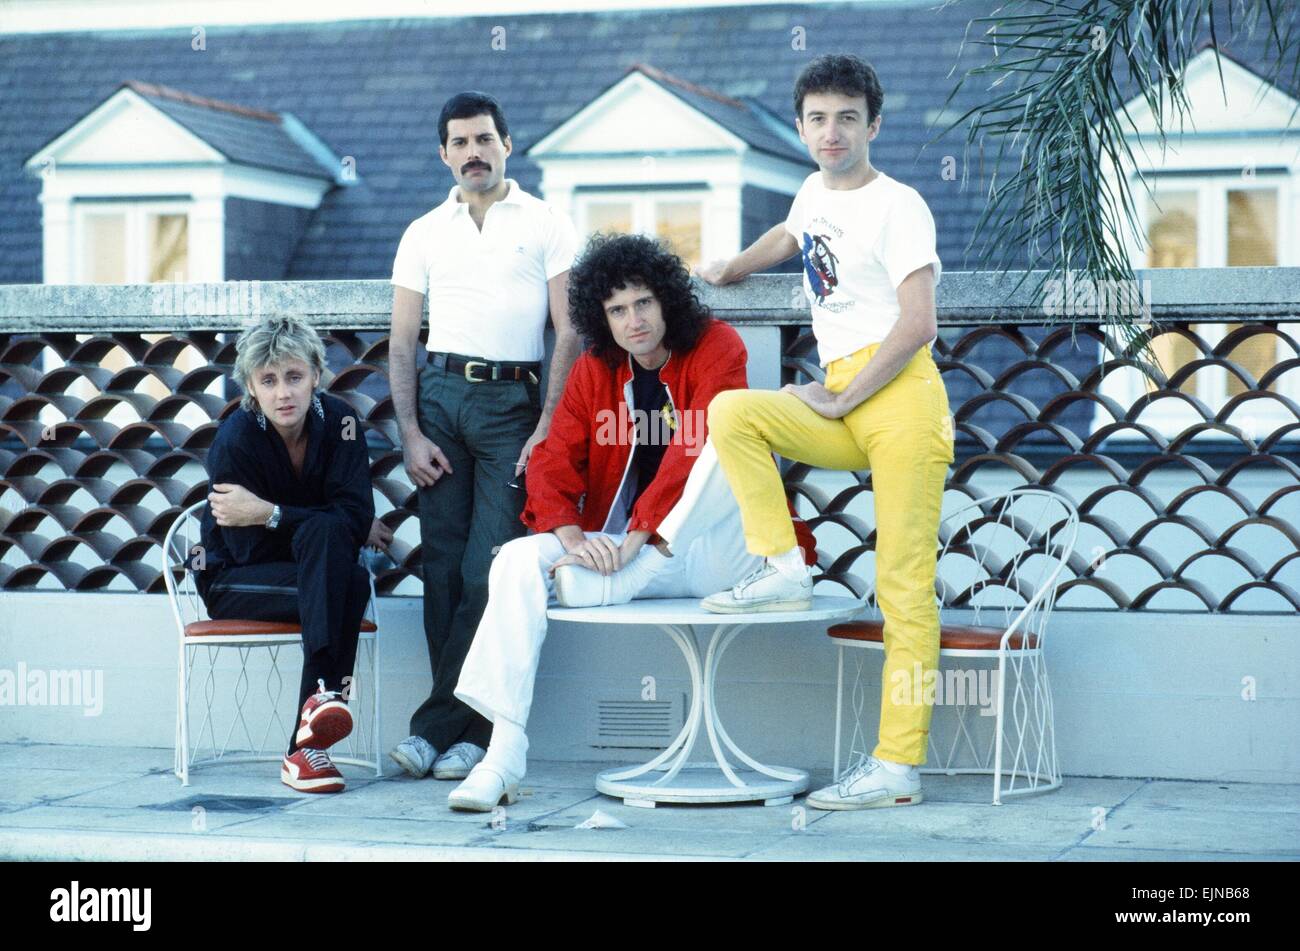 Le groupe de rock Queen, Freddie Mercury, Brian May, Roger Taylor et John Deacon vu ici à New Orleans, USA. Ils sont en répétition pour leur prochaine tournée de l'Amérique du Sud. 21 septembre 1981, Banque D'Images